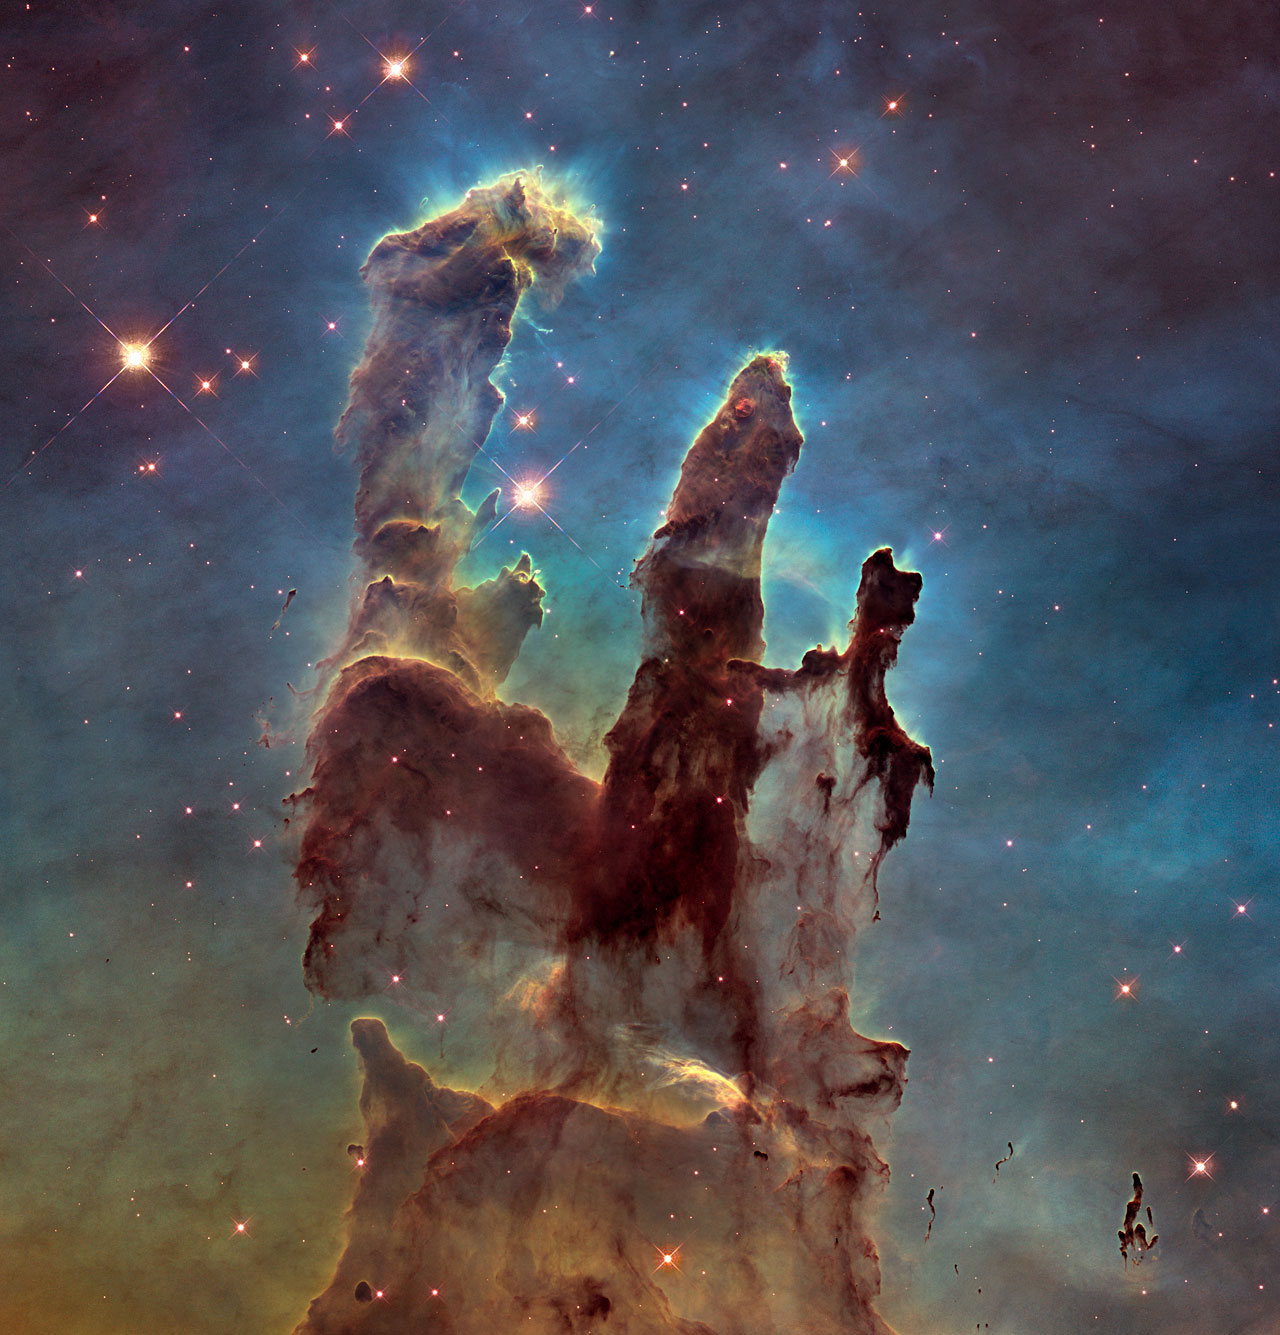 «Столпы творения» - новое культовое фото в высоком разрешении от НАСА 1